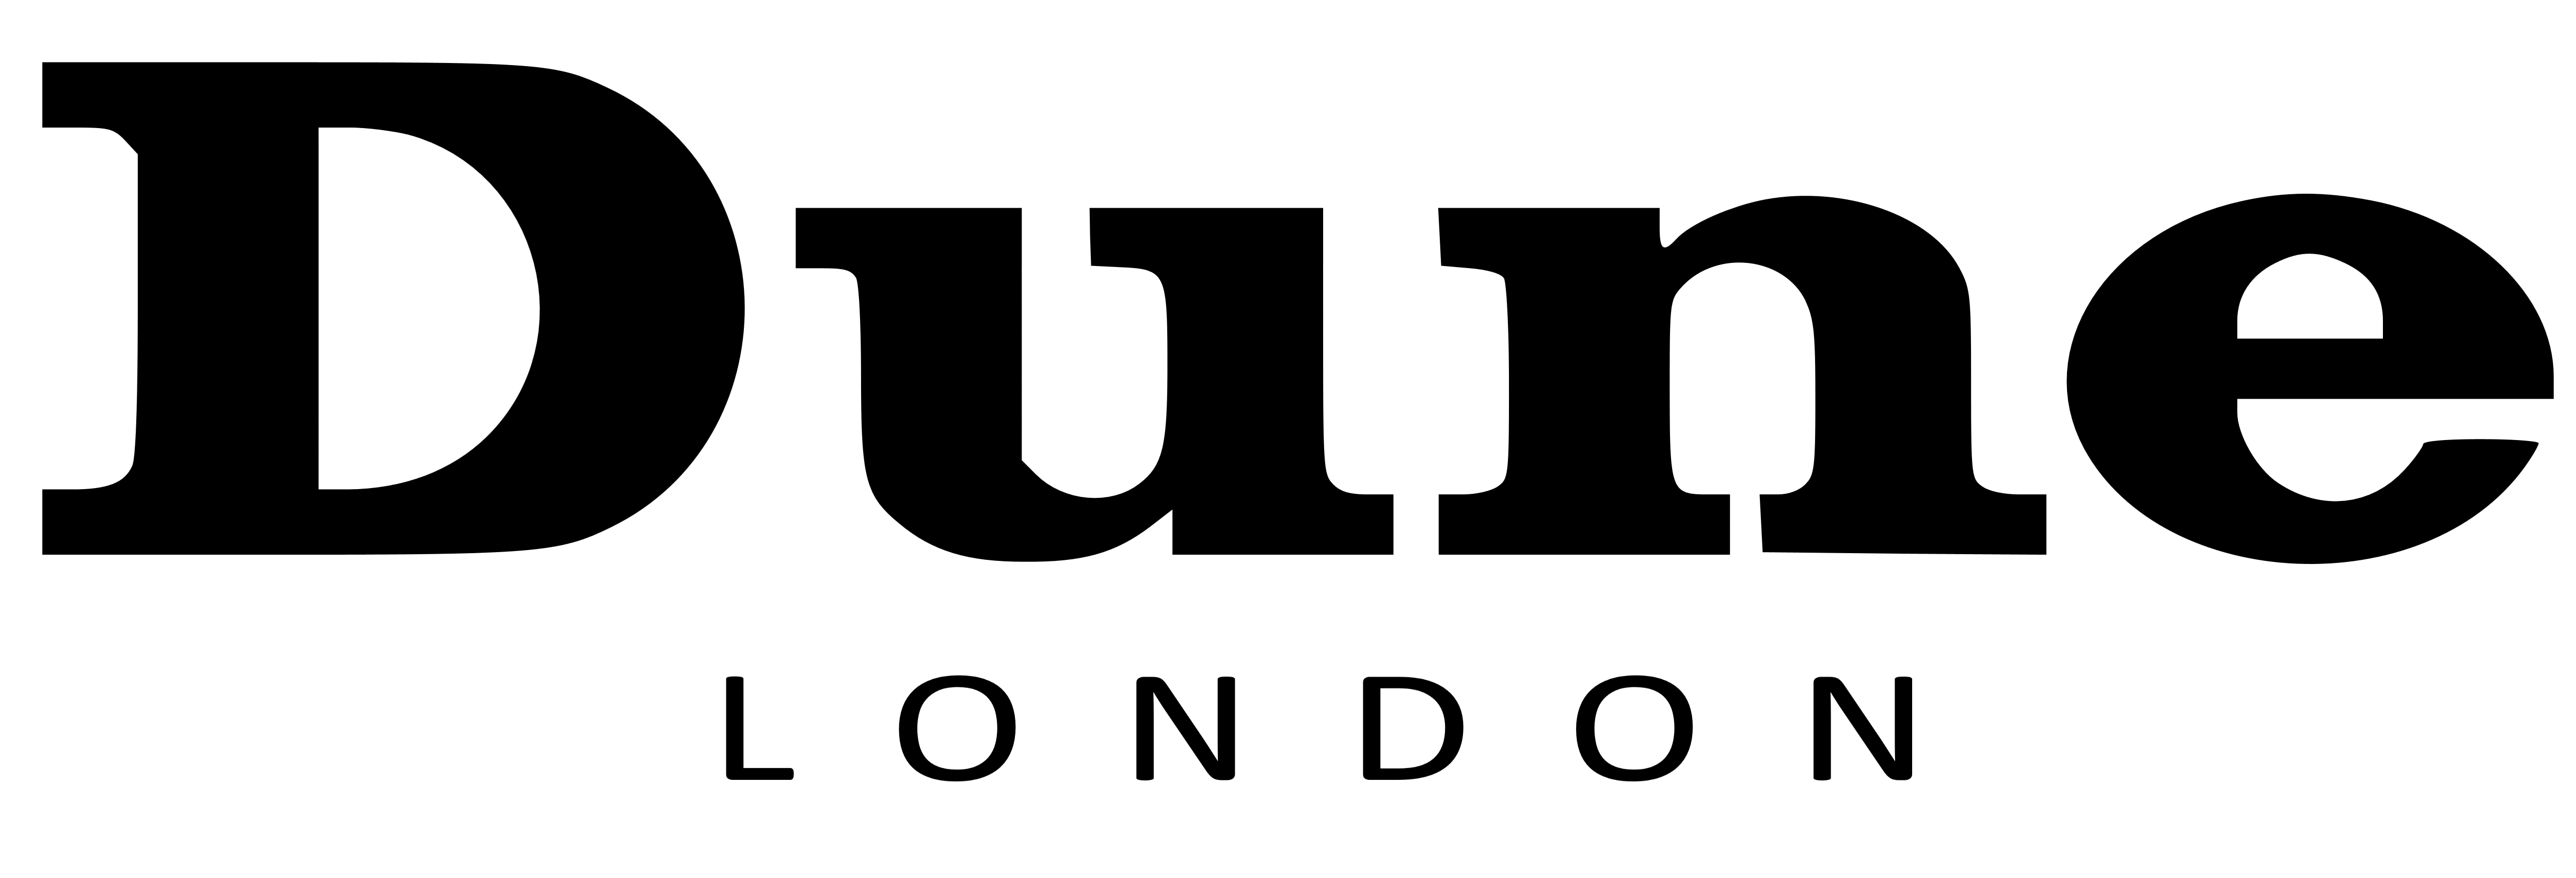 Dune London logo, logotype